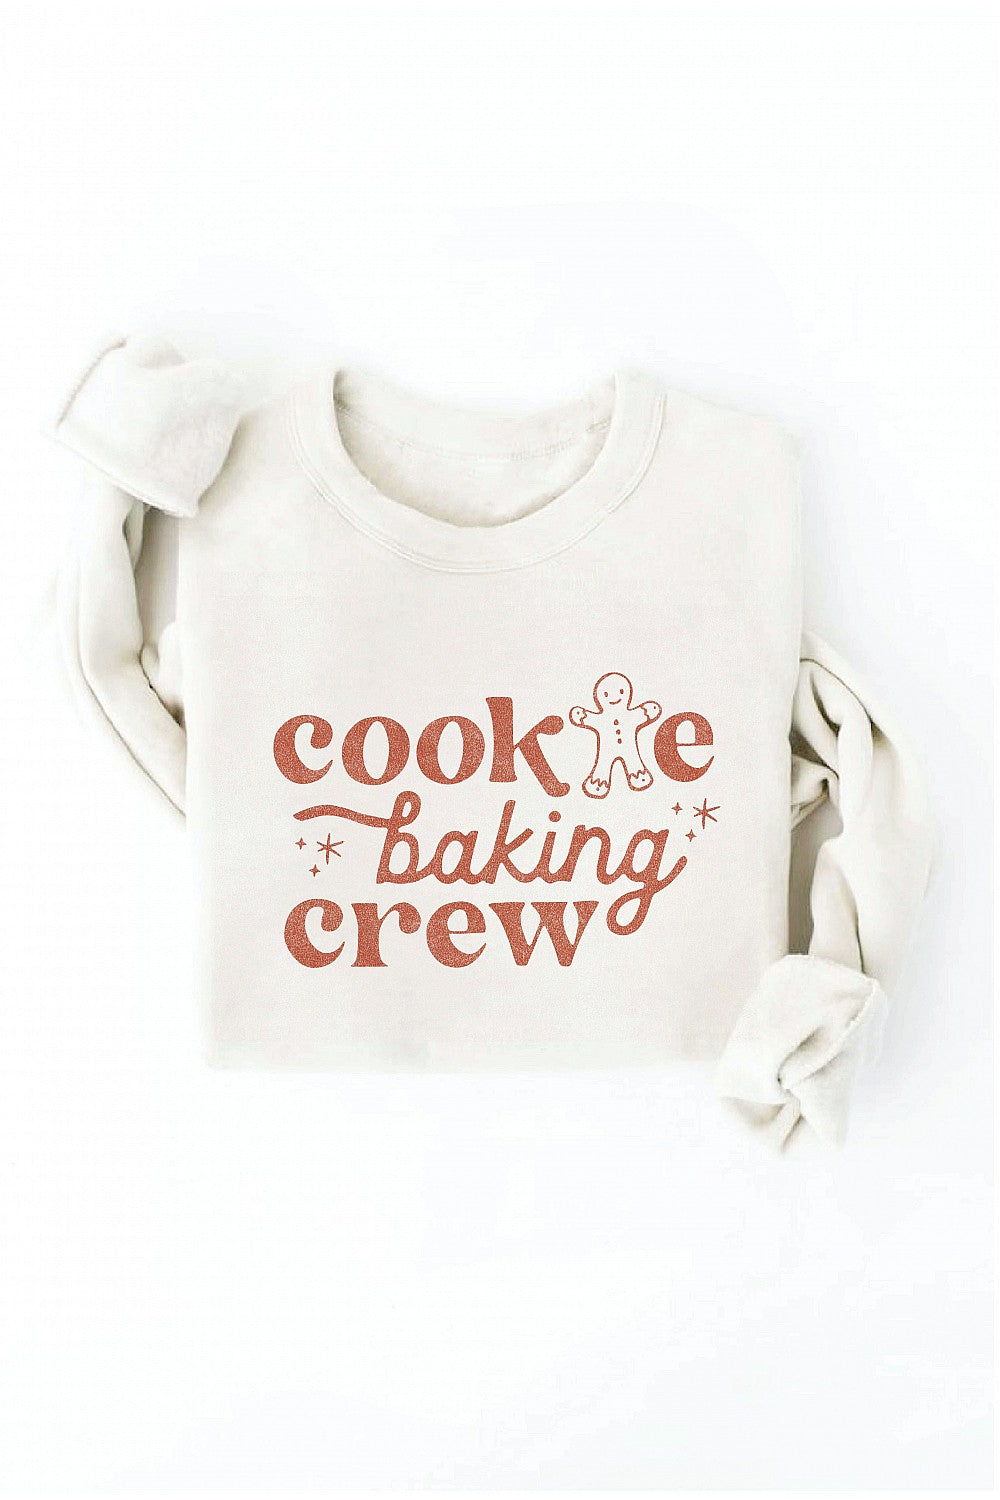 Cookie baking sweatshirt